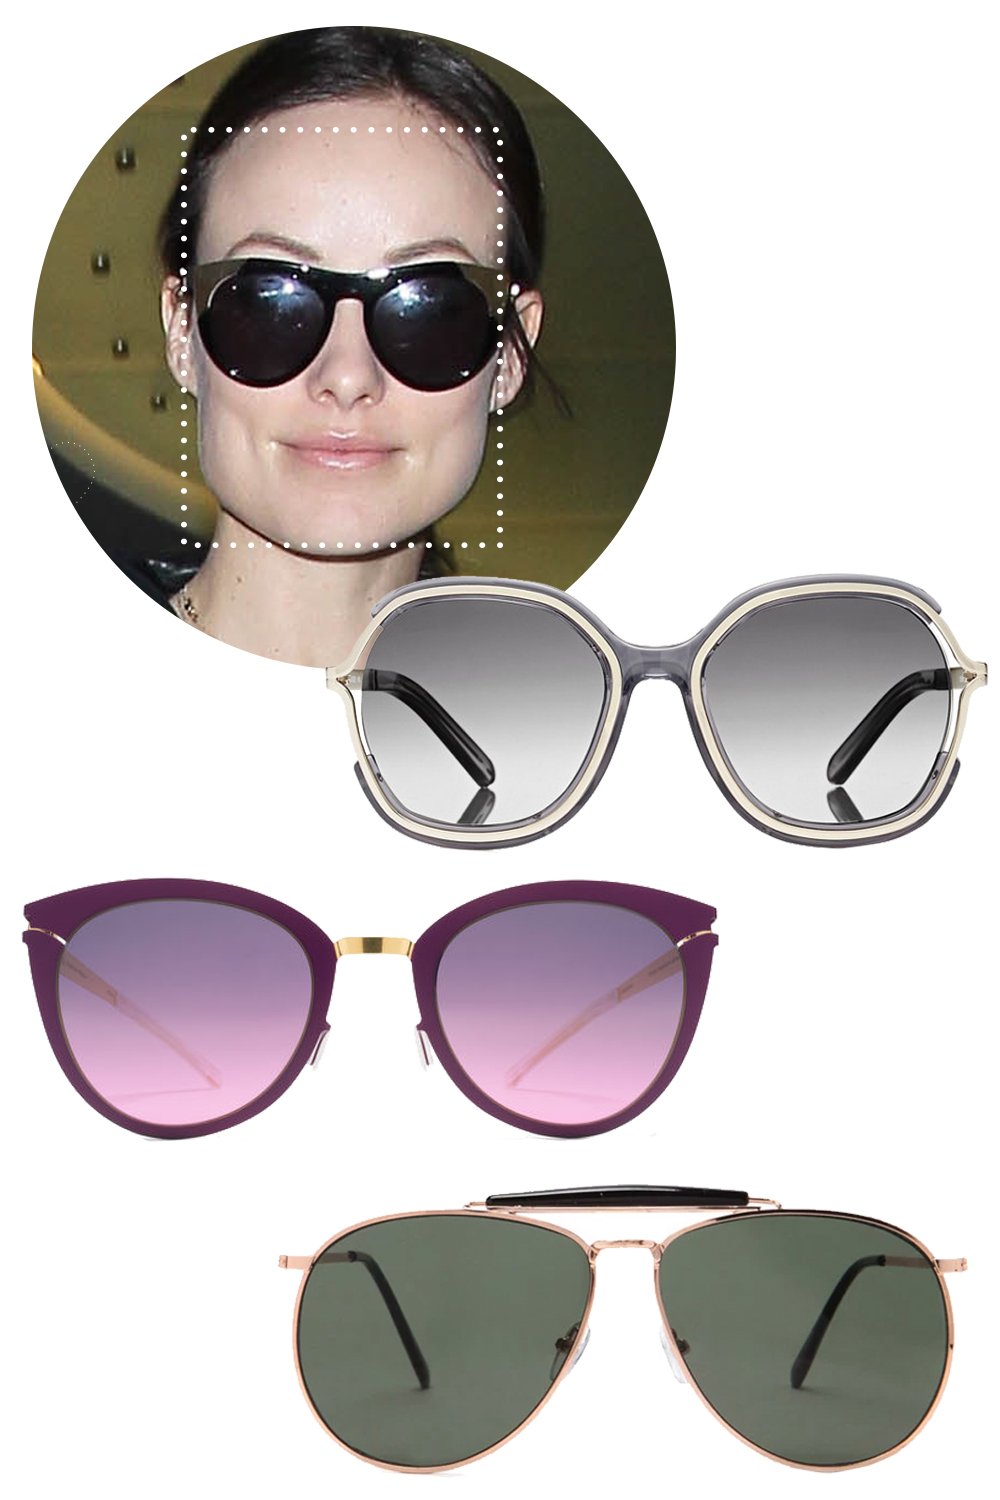 Очки для прямоугольного лица. Солнцезащитные очки. Солнечные очки для круглолицых. Форма очков для круглого лица. Очки для круглого лица женские солнцезащитные.